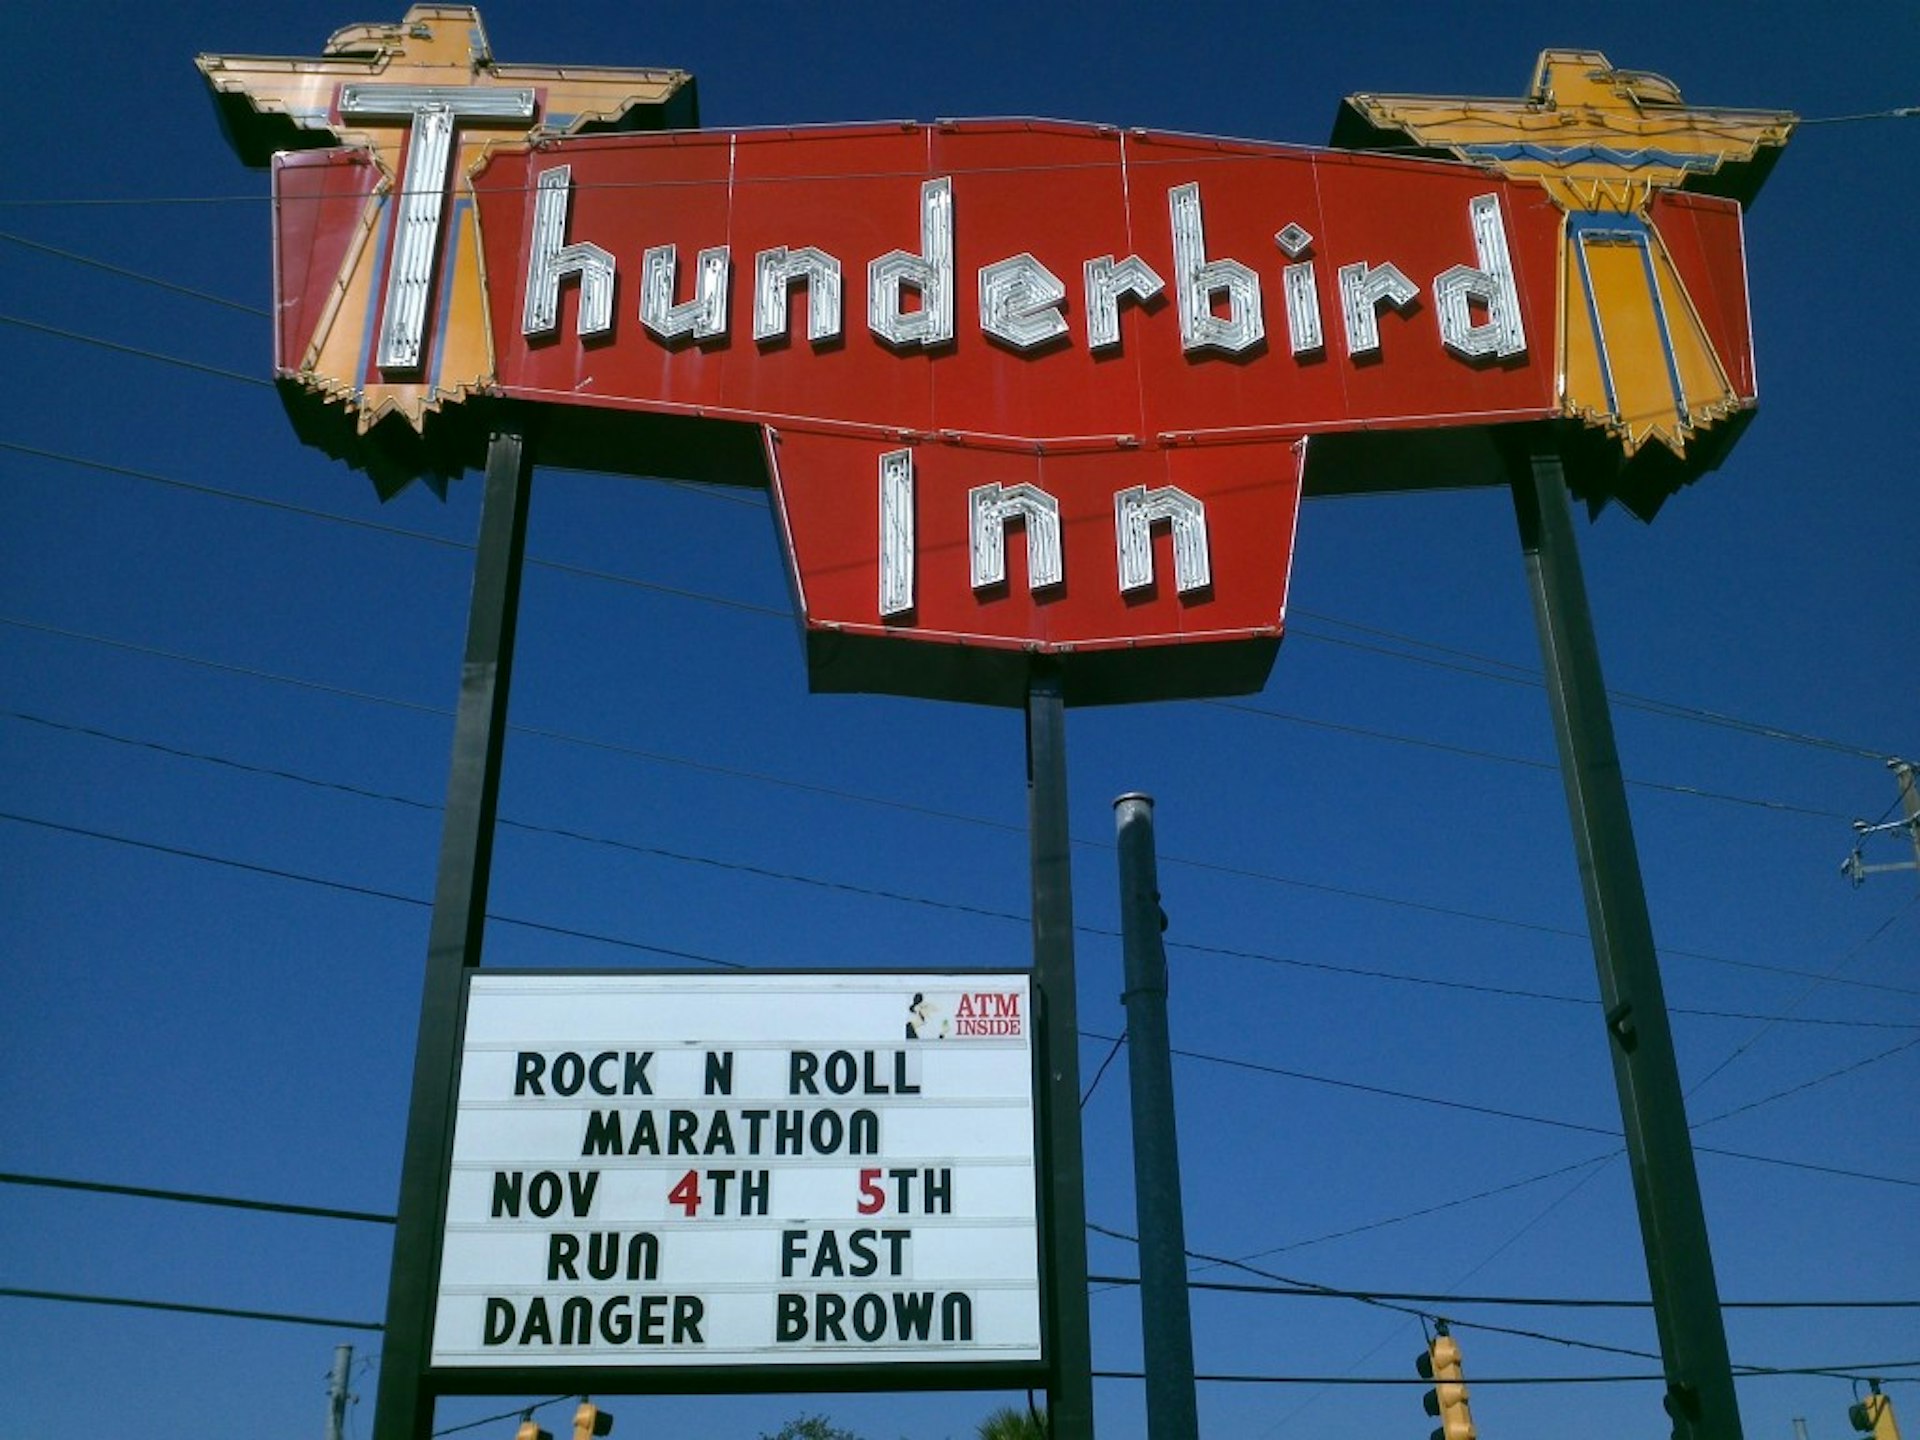 A neon sign reading "Thunderbird Inn," with a blue sky behind